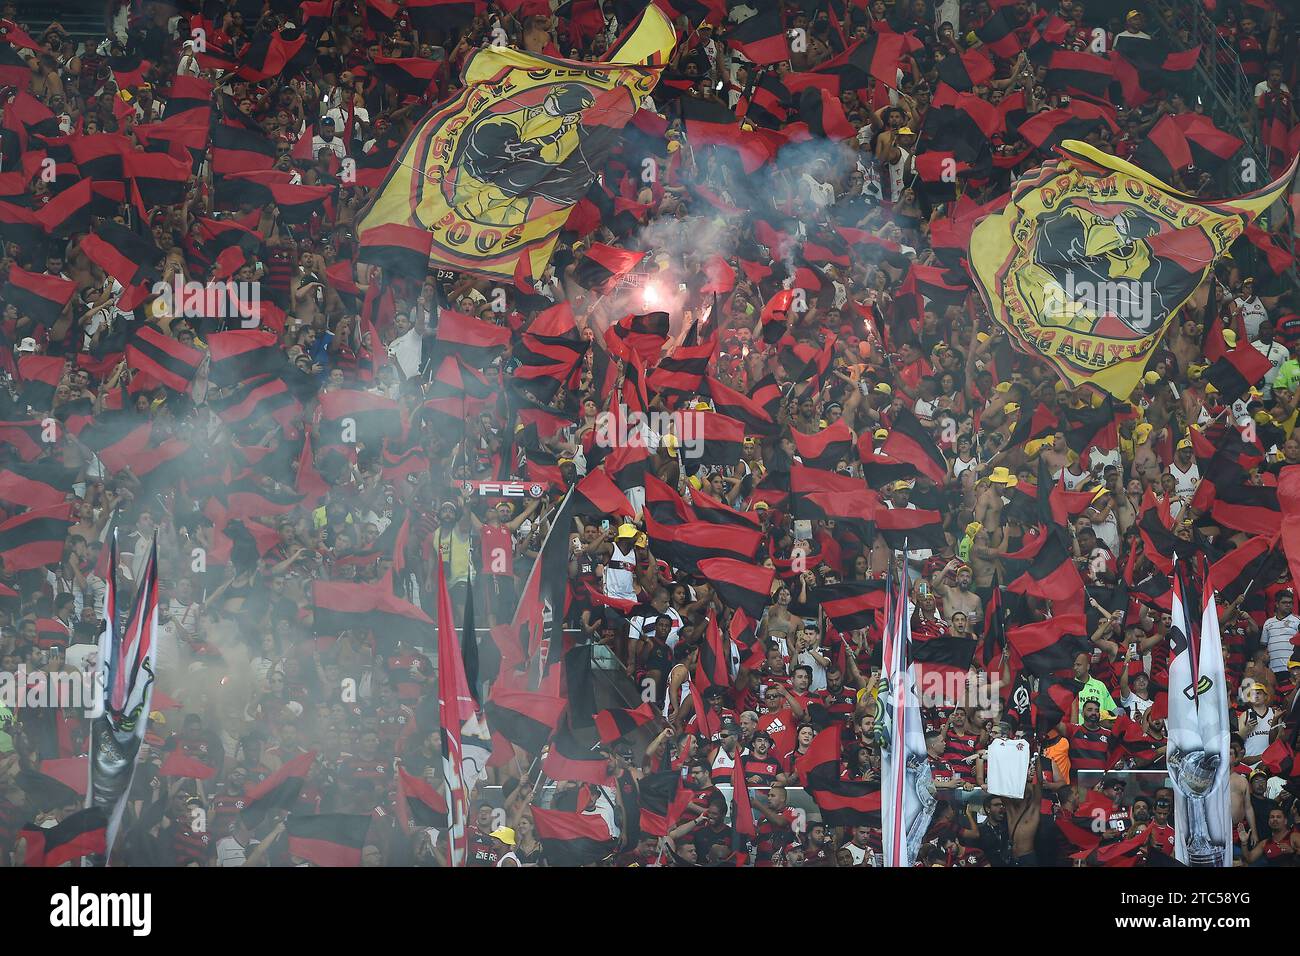 Rio de Janeiro, 17 septembre 2023. Match de football entre l'équipe de São Paulo et Flamengo, valable pour la finale de la Copa do Brasil 2023, qui a lieu à Banque D'Images